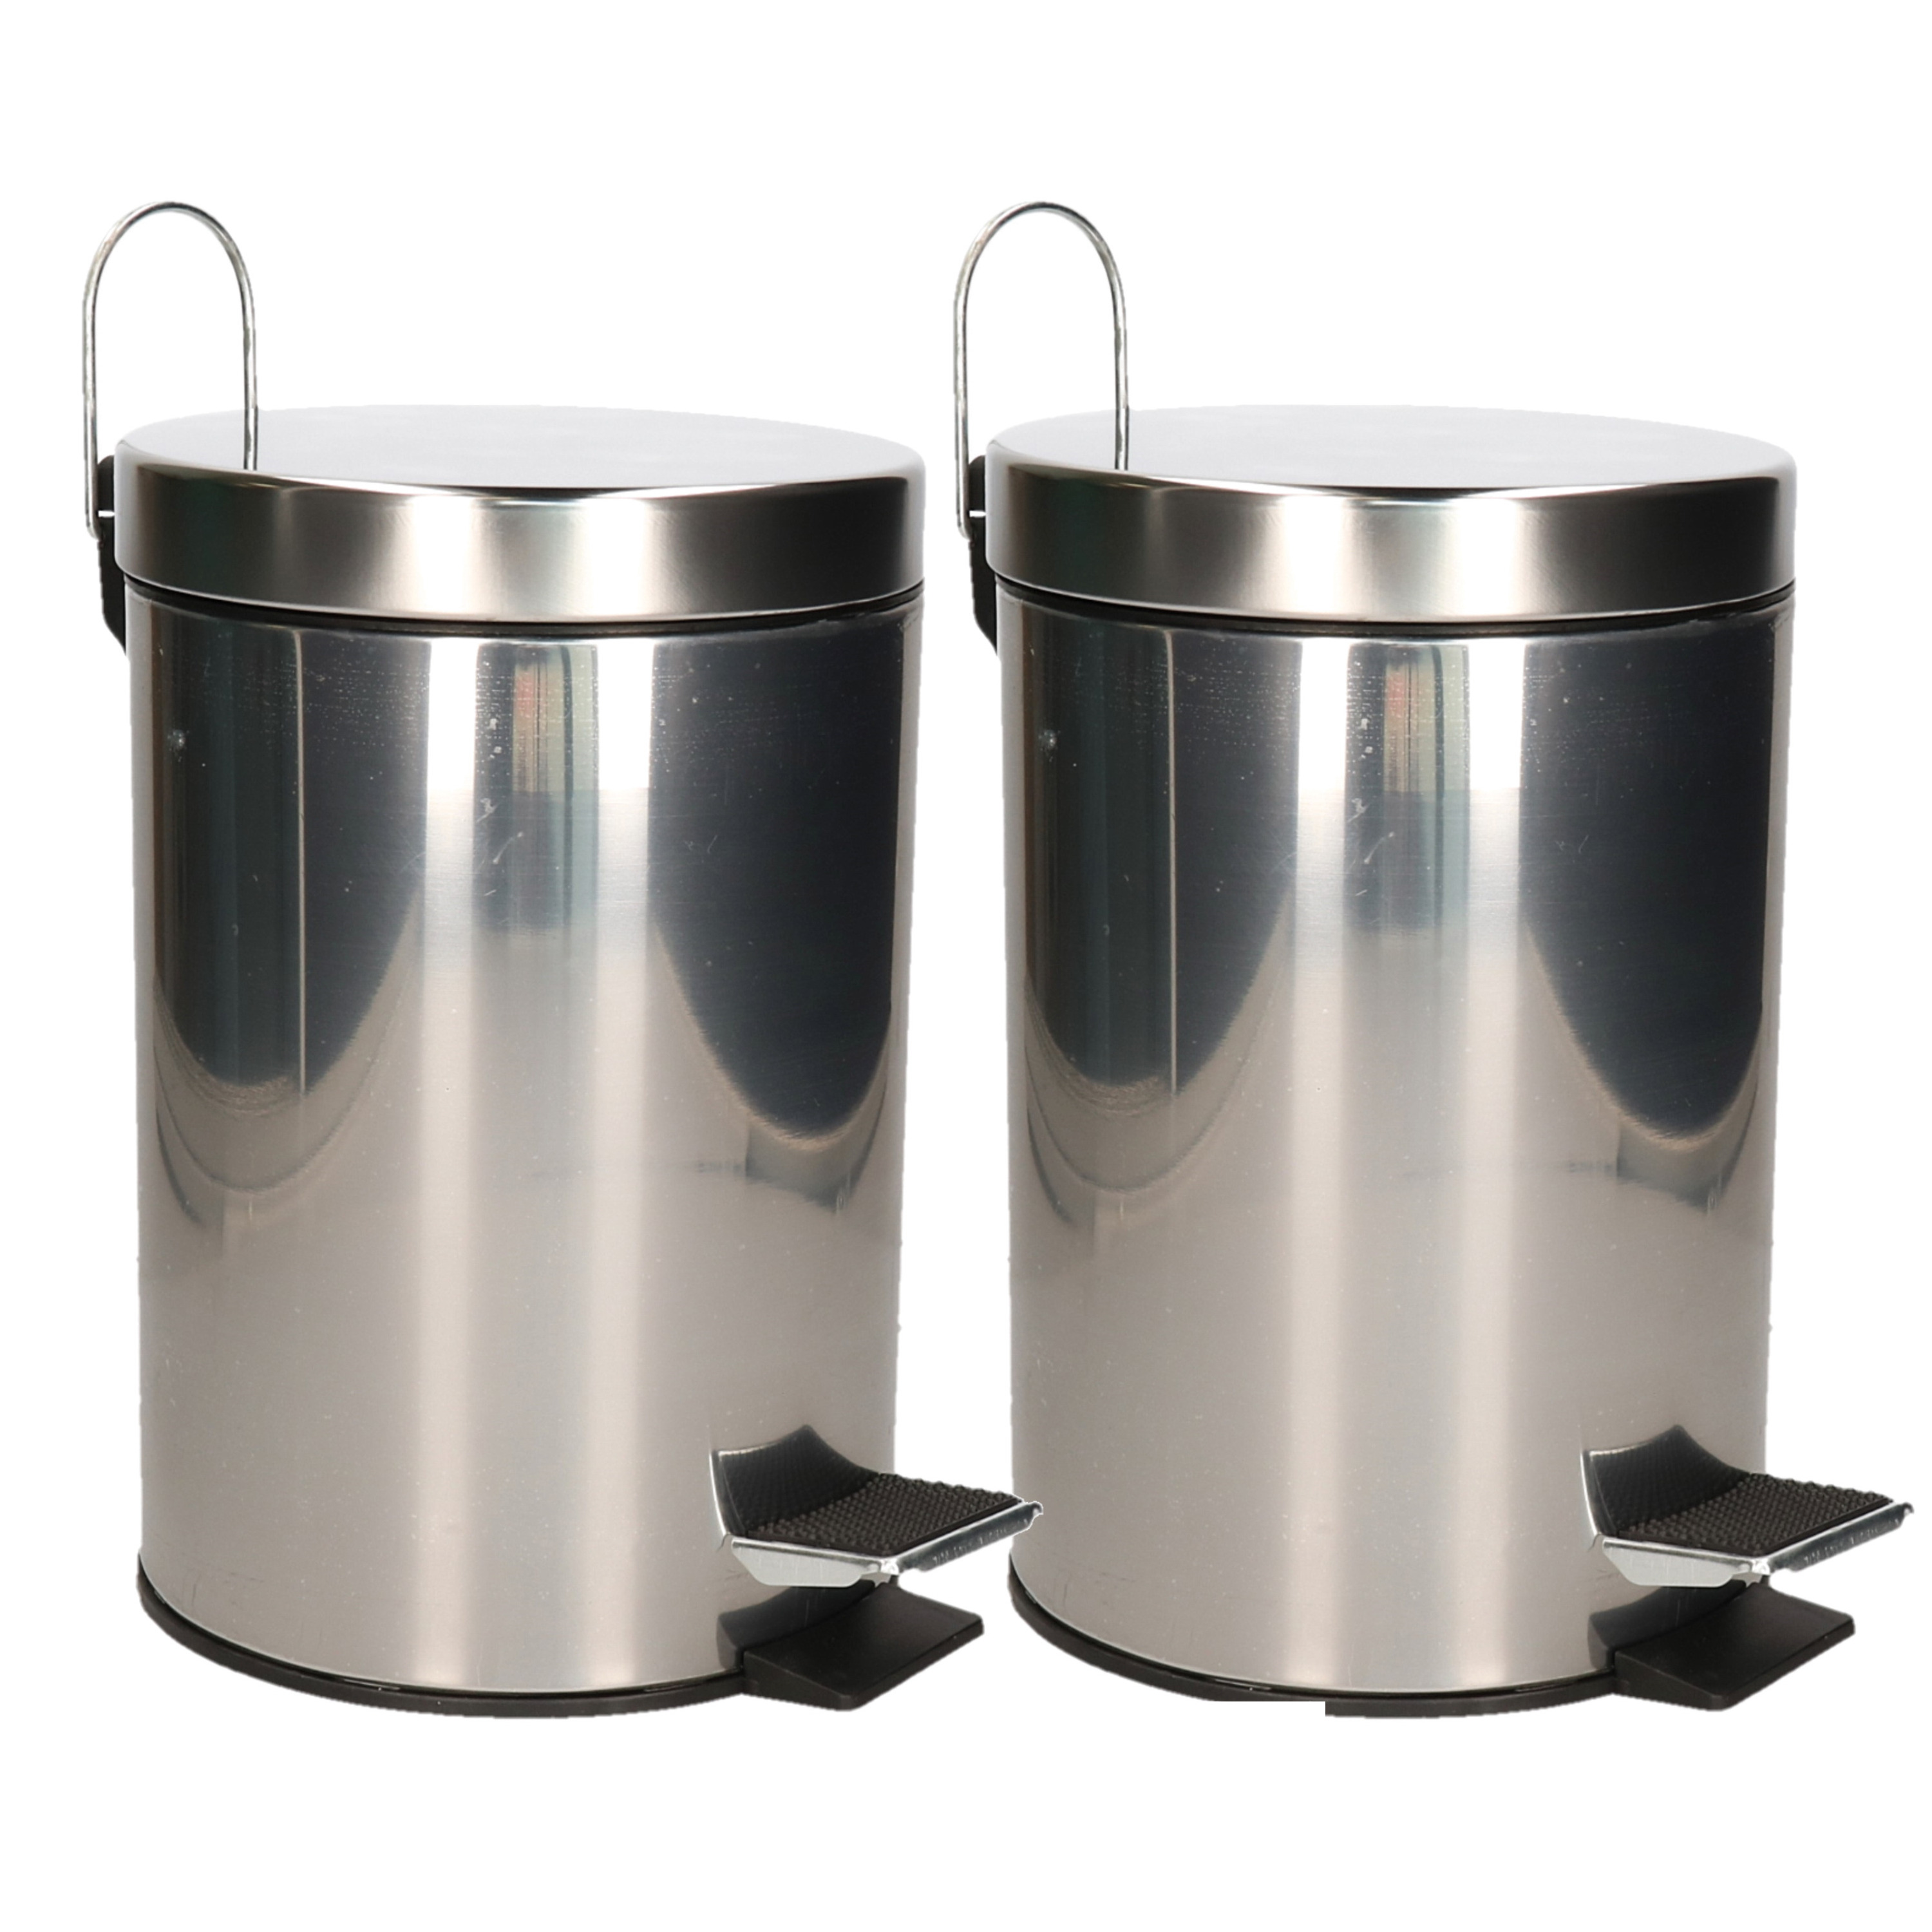 Pedaalemmer-prullenbak-vuilnisbak 2x 3 liter zilver RVS 17 x 25 cm